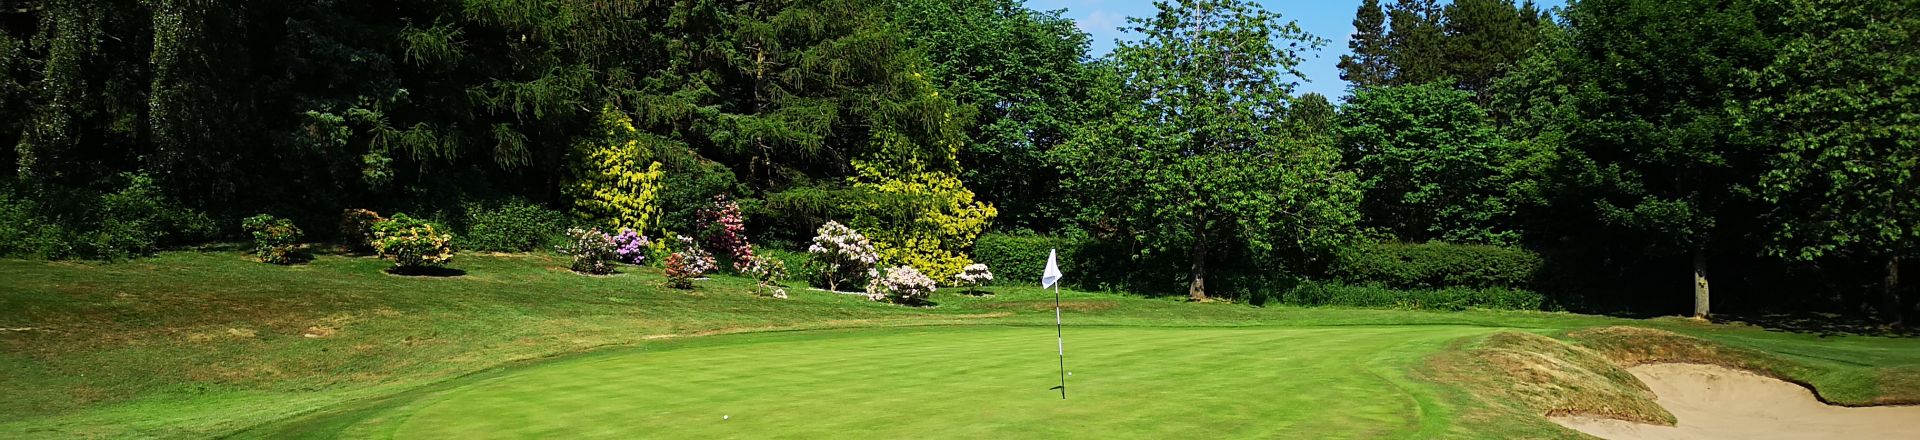 Ilkley Golf Club for Golf breaks in Yorkshire